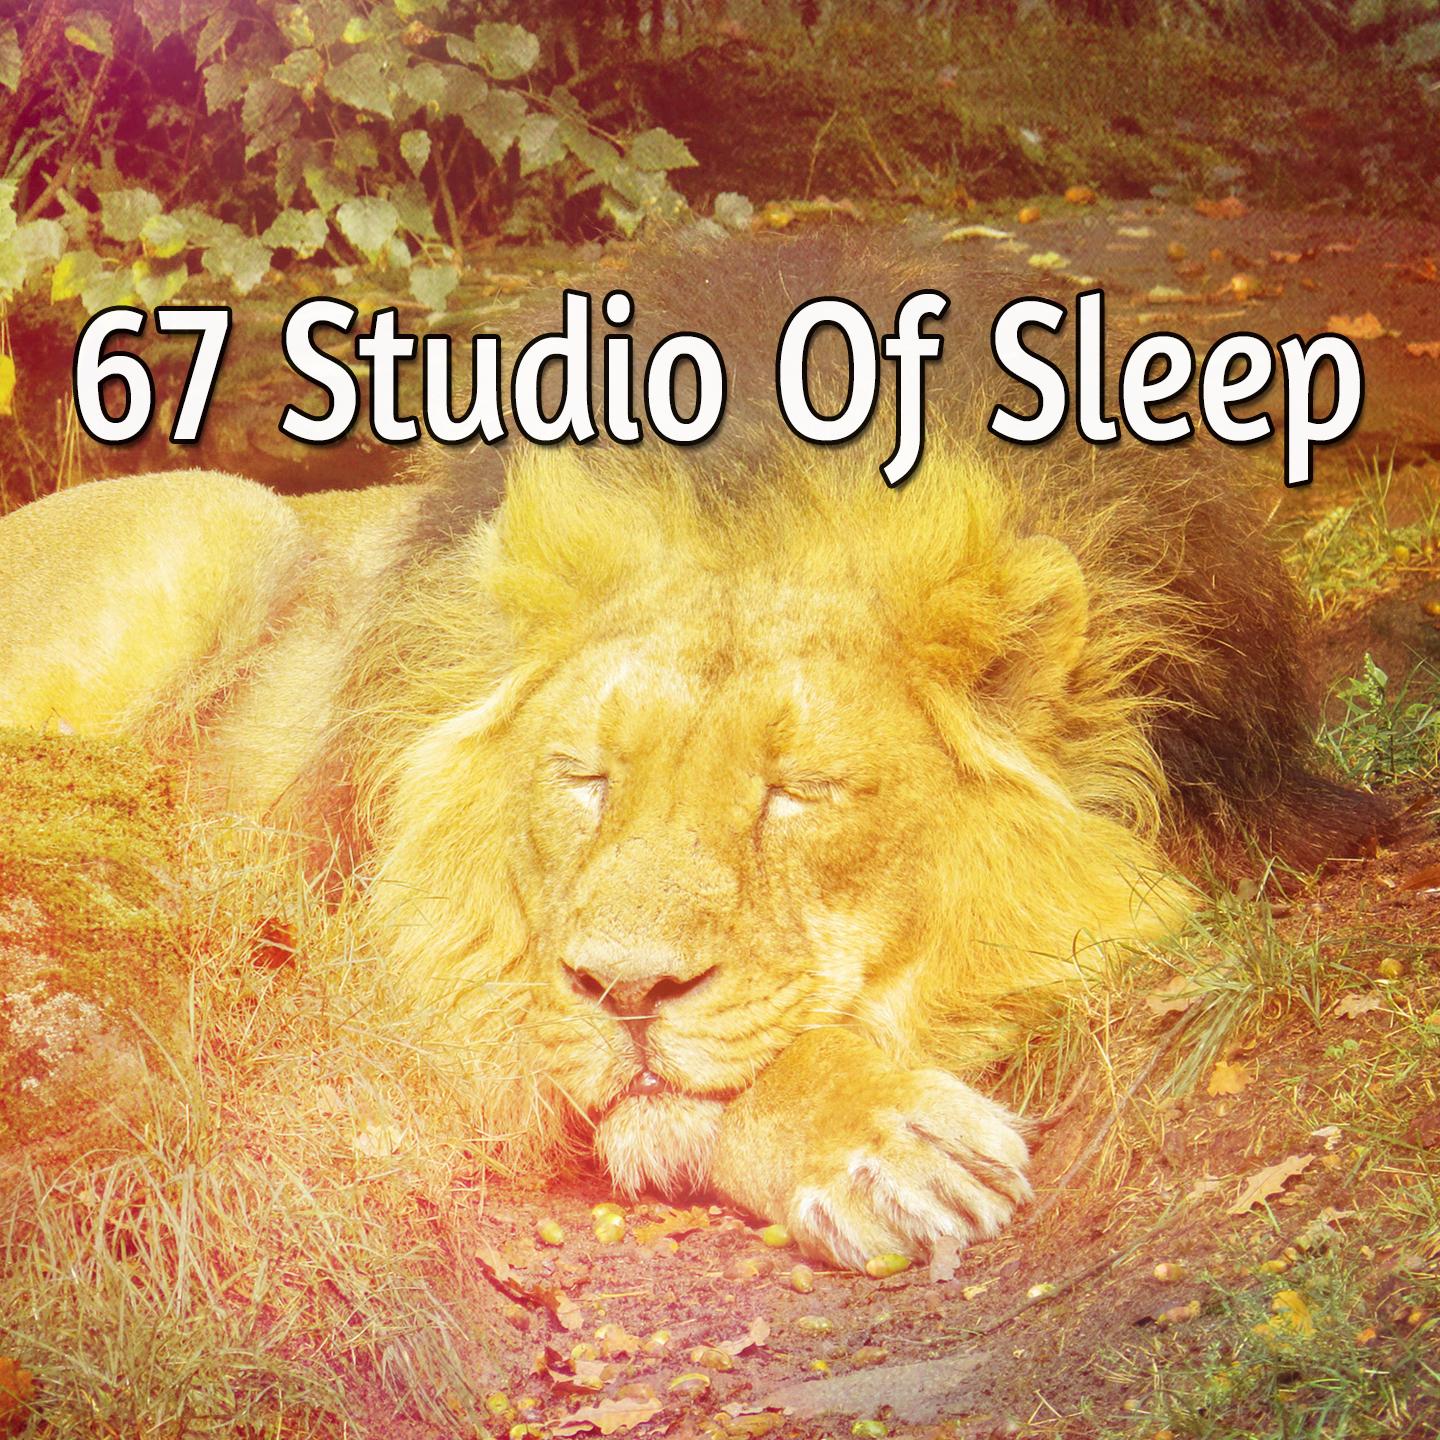 67 Studio Of Sleep